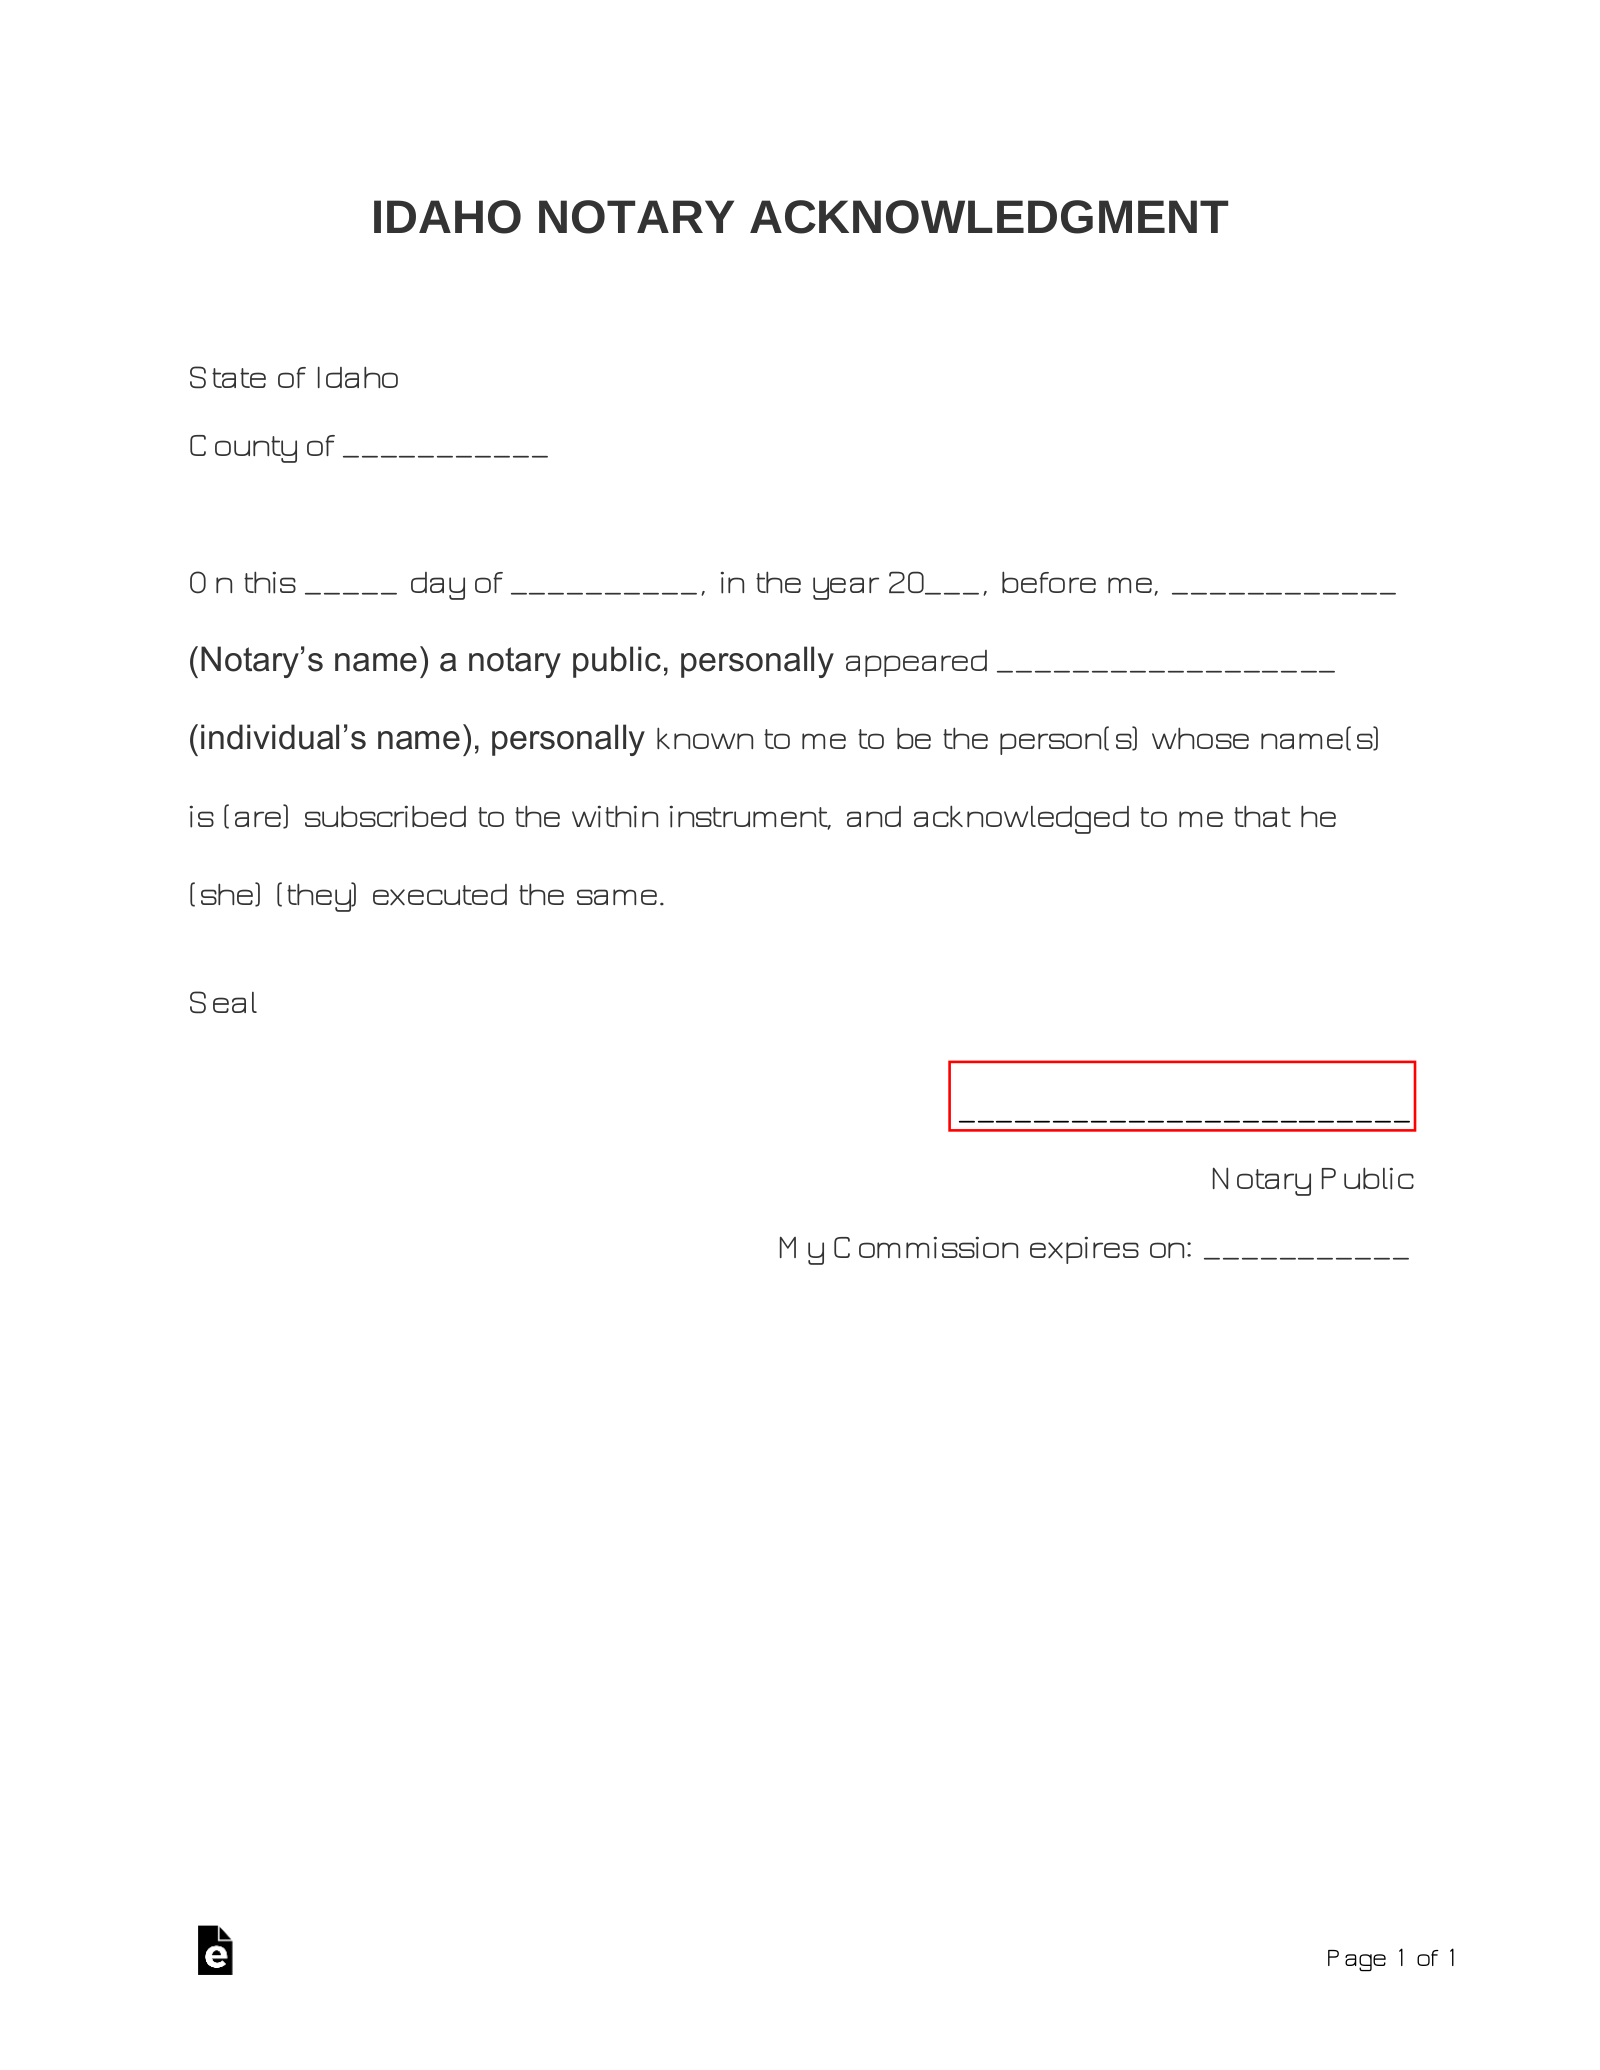 Idaho Notary Acknowledgment Form